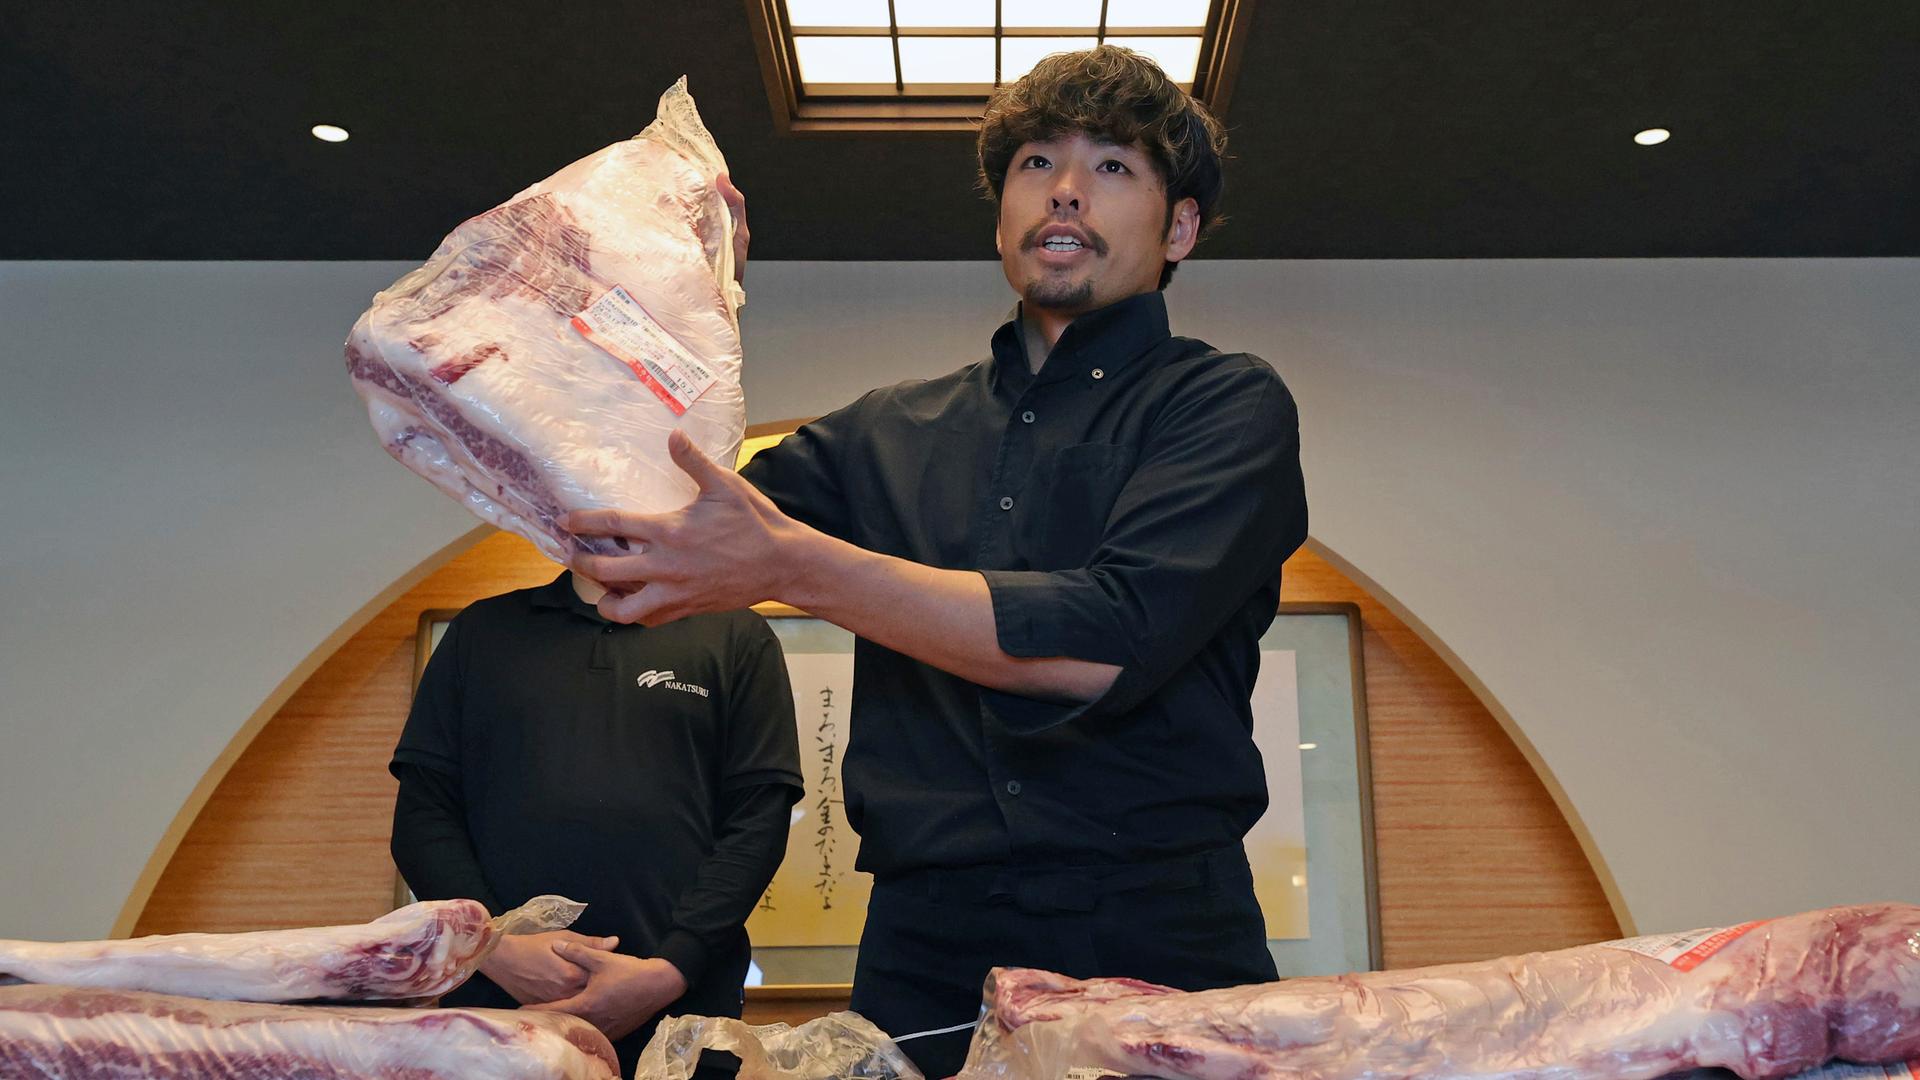 Der Chef eines Yakiniku-Restaurants (japanisches gegrilltes Fleisch) kocht Hakata Wagyu (japanisches Rindfleisch) in einem Yakiniku-Laden in Kurume. Hakata, das beliebteste Einkaufsviertel, ist nach Wagyu benannt, um für das Rindfleisch zu werben.